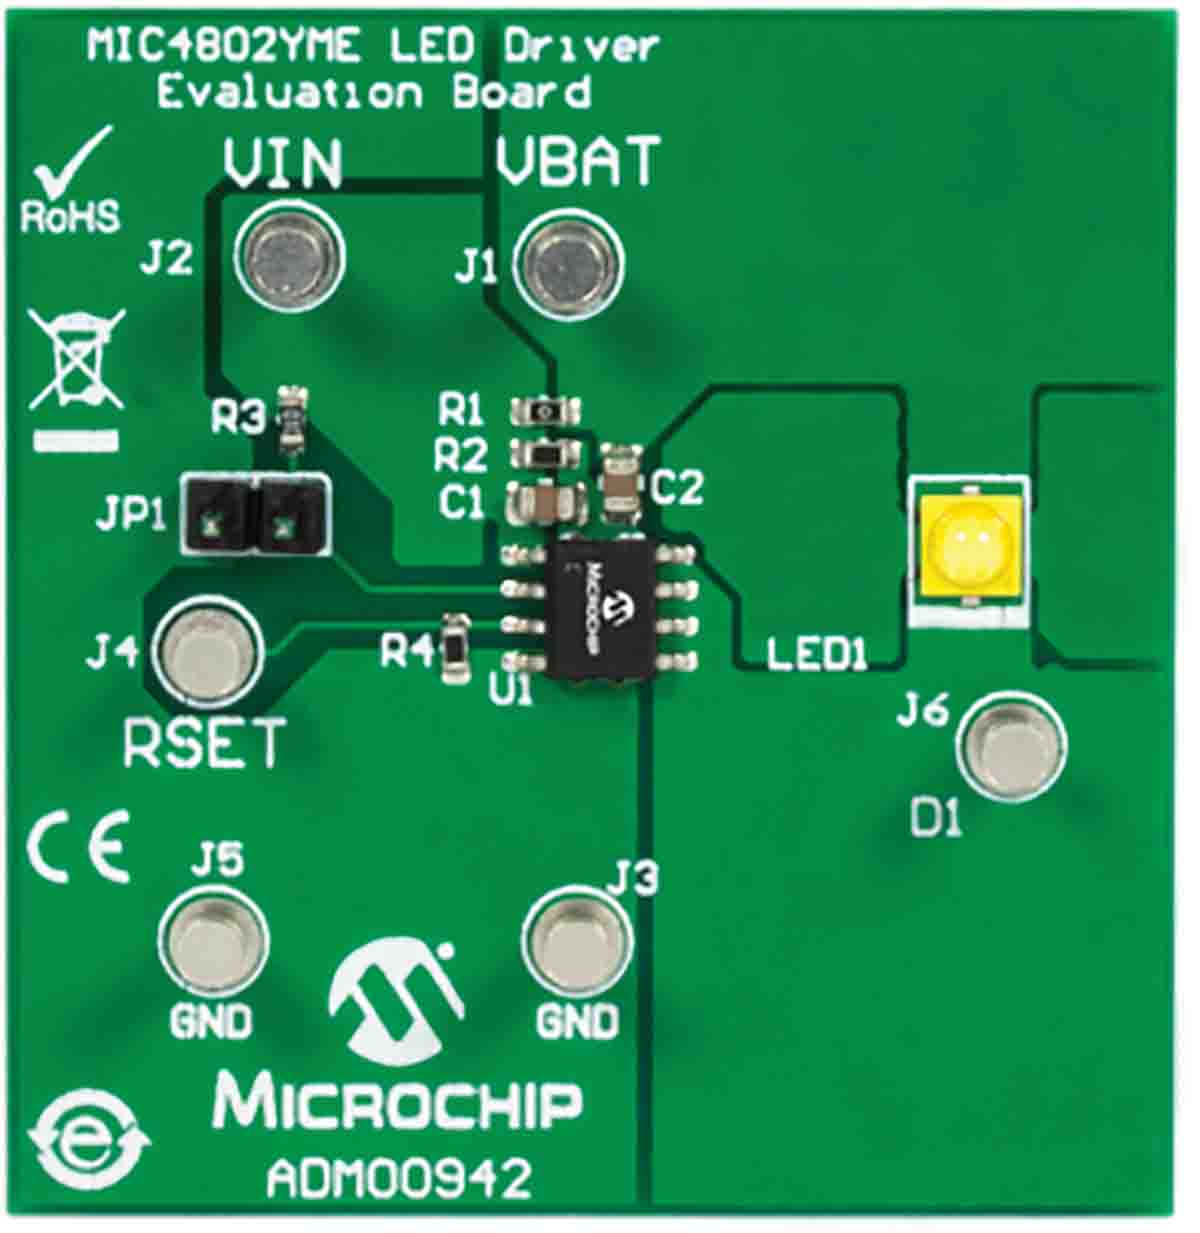 Microchip Evalueringskort LED-driver evalueringssæt ADM00942